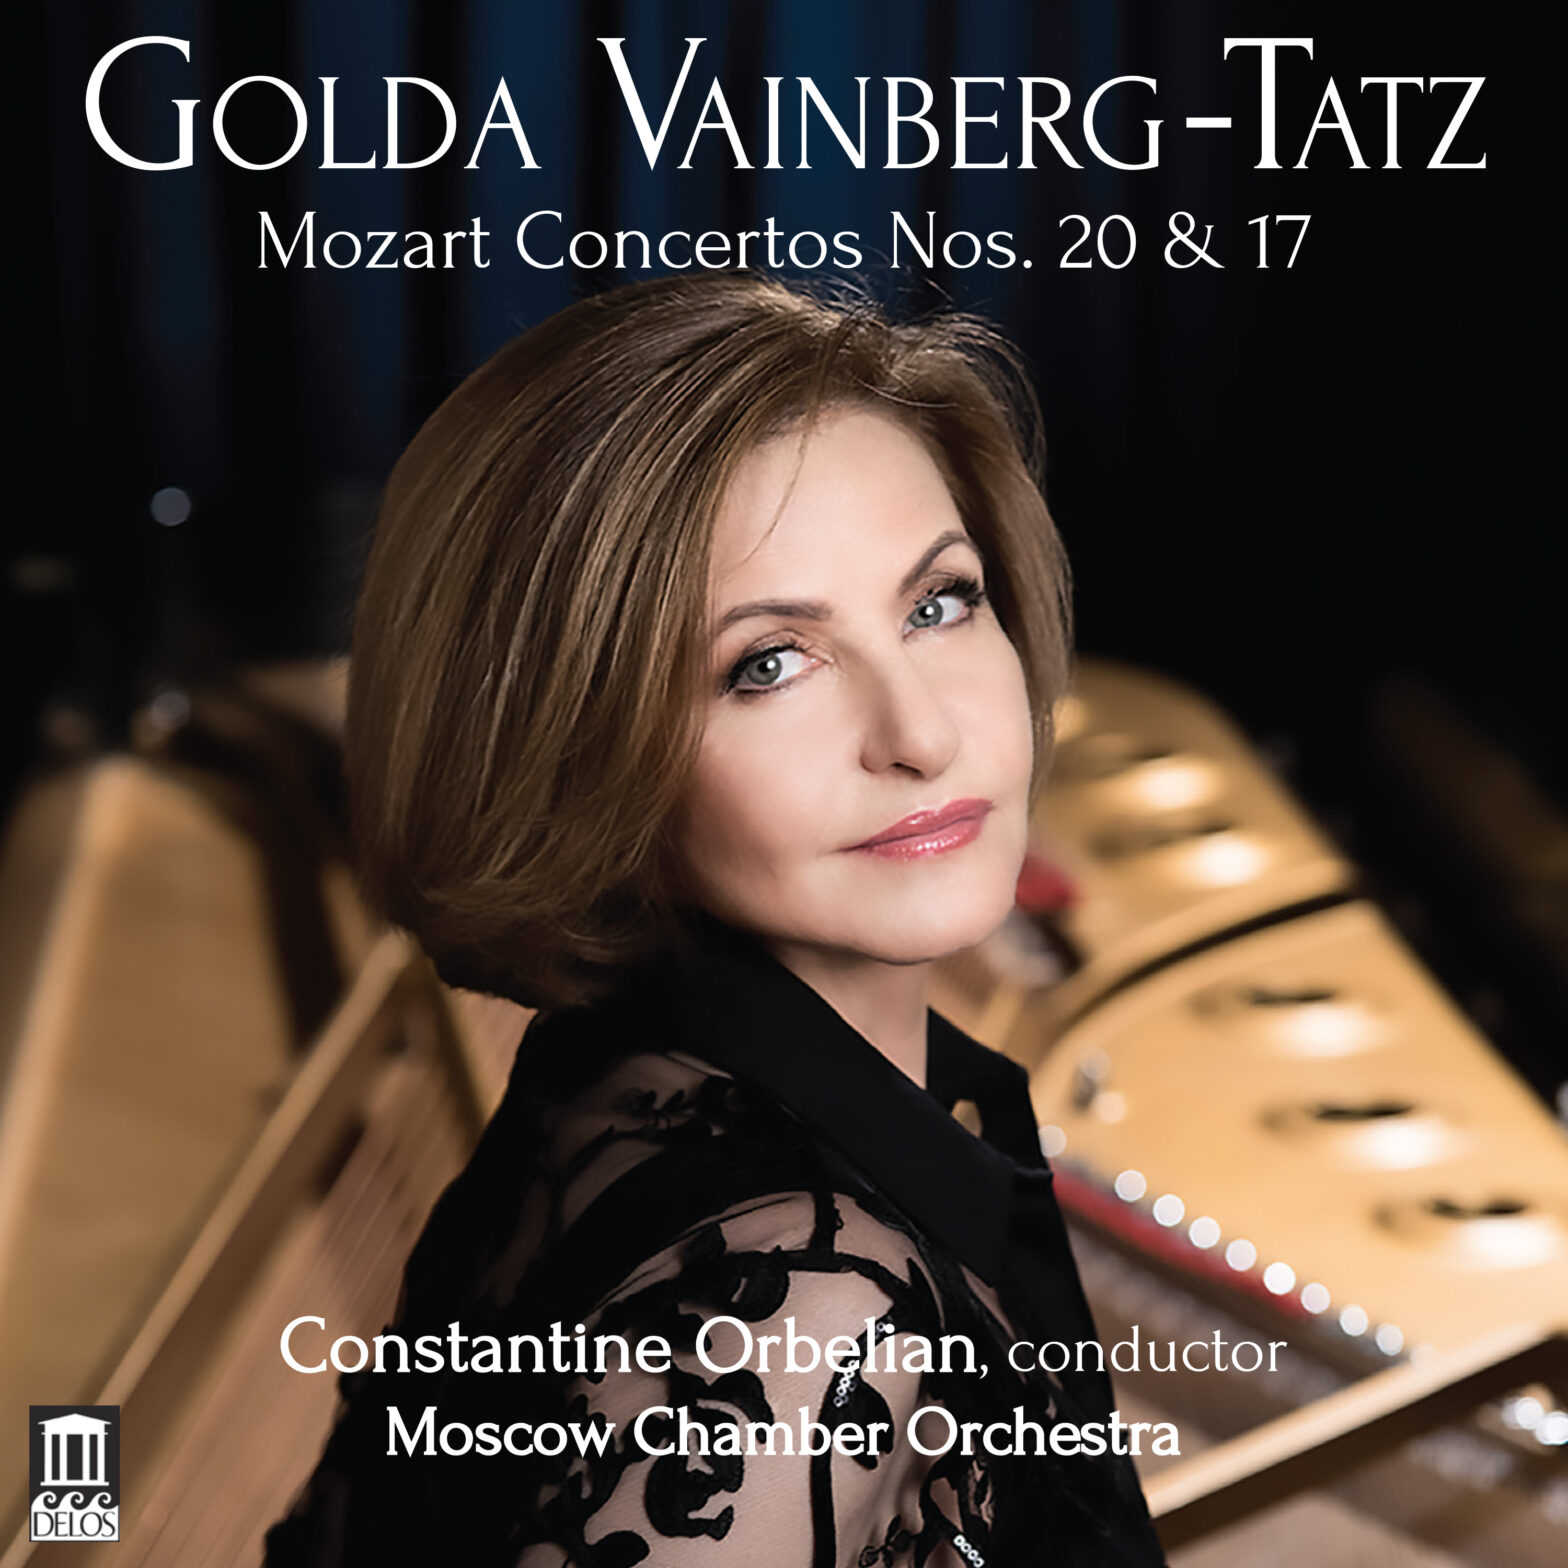 Delos Re-issues Golda Vainberg-Tatz’s Mozart Concertos